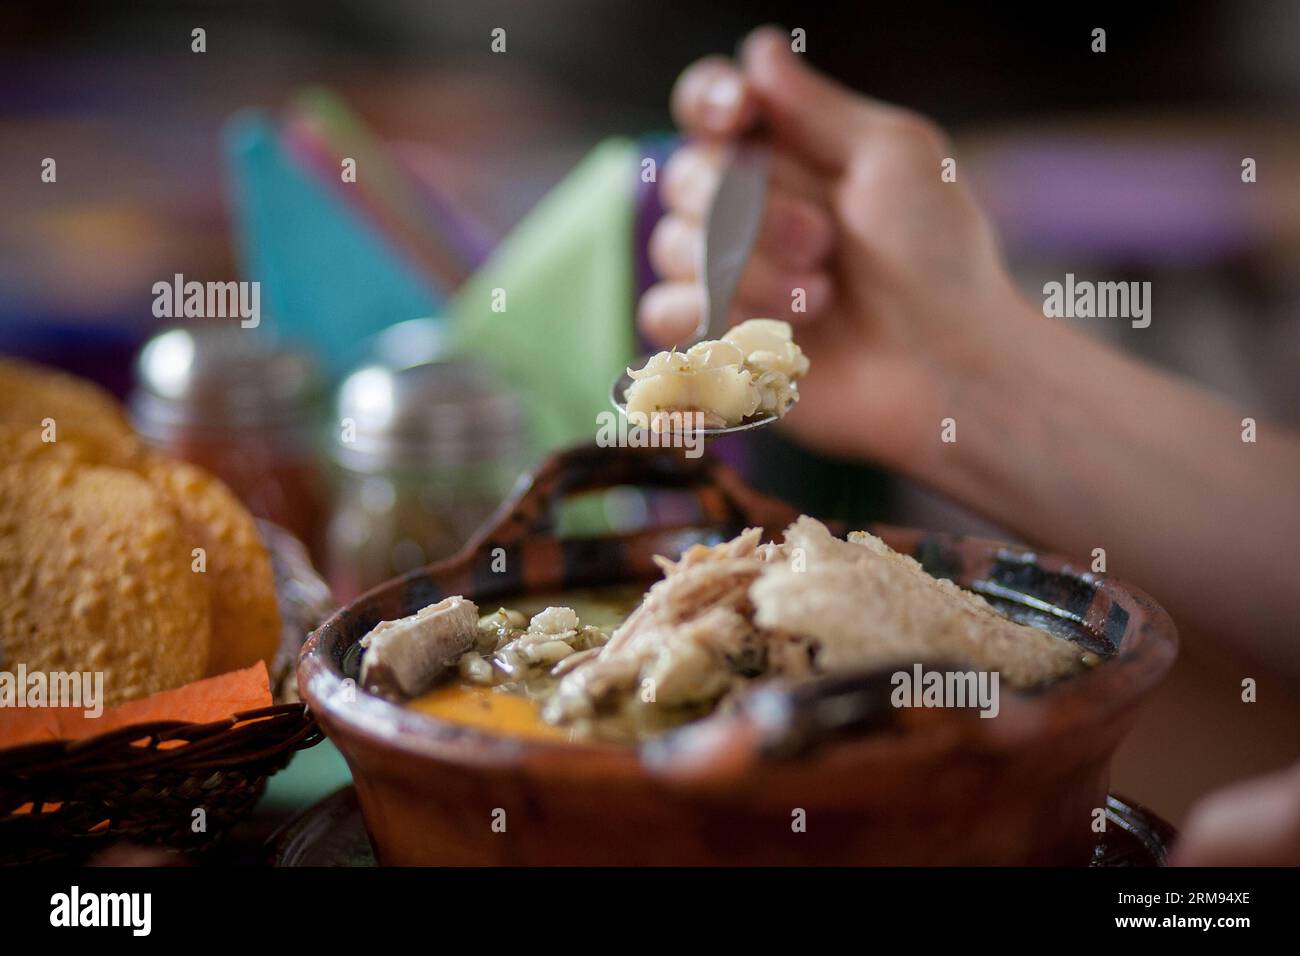 (140507) -- MEXIKO-STADT, 7. Mai 2014 (Xinhua) -- Eine Frau schmeckt eine Portion Pozole (Maissuppe) im Pozoleria Tixtla Restaurant, in Mexiko-STADT, Hauptstadt von Mexiko, am 7. Mai 2014. Das Pozole ist ein traditionelles Gericht, das unter anderem in den bundesstaaten Guerrero, Michoacan, Jalisco, Nayarit und Sinaloa zubereitet wird. Der Ursprung geht auf die vorhispanische Zeit zurück. Unter den verschiedenen Rezepten zur Zubereitung von Pozole hat der Guerrero-Staat die Besonderheit, grün zu sein, da er mit einer Mischung aus traditioneller Maulwurfsauce grüner Farbe, Chicharron (Schweineschleife), Sardine und rohem Ei zubereitet wird (Xinhua/Pedro Me) Stockfoto